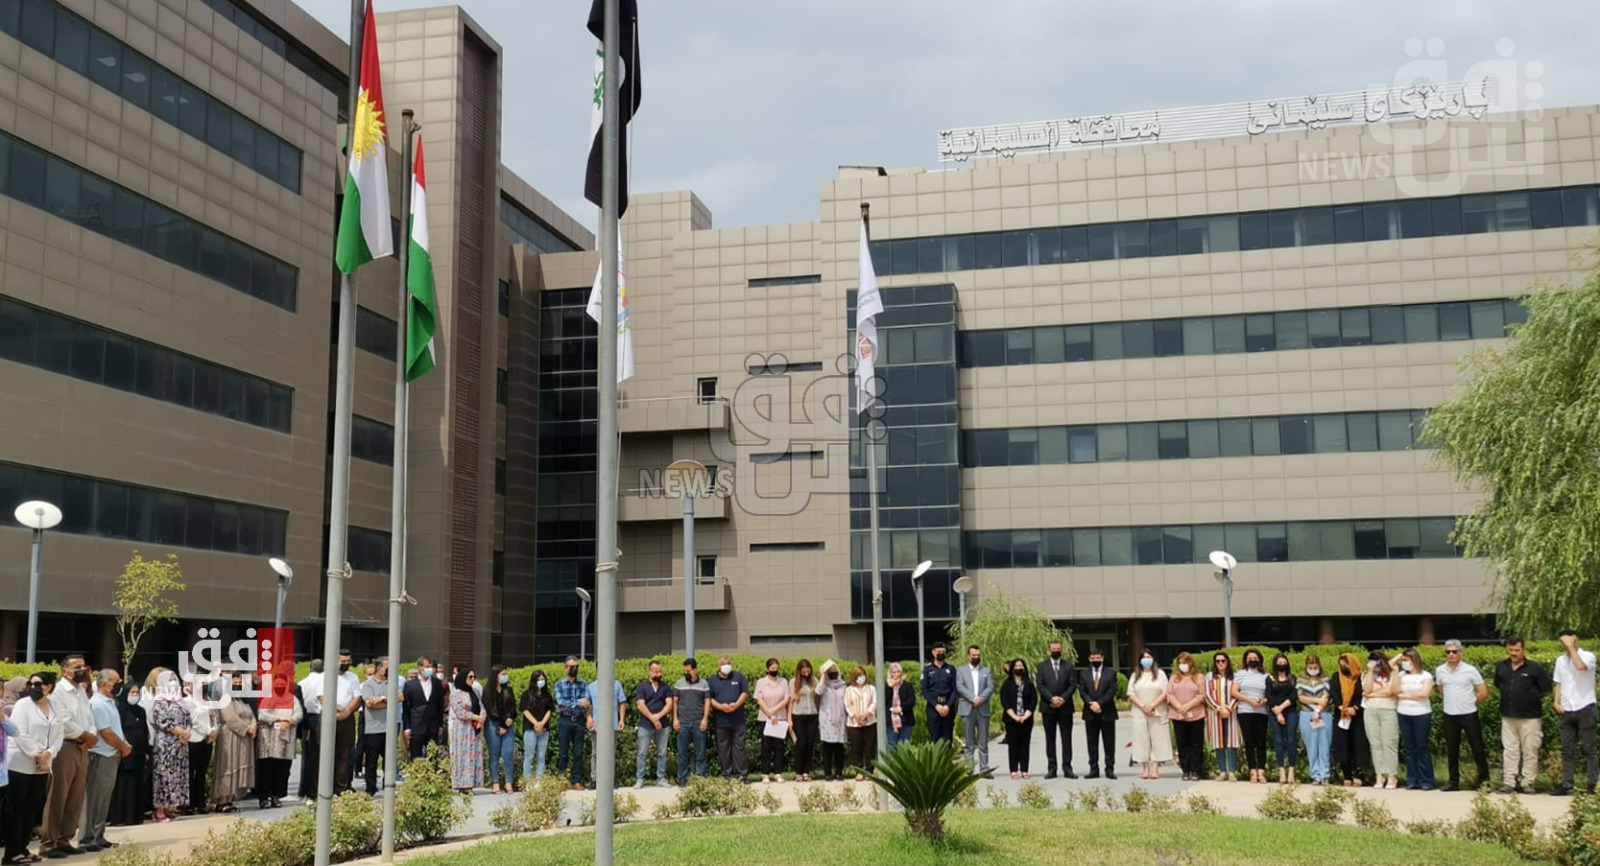 السليمانية توجه طلباً إلى حكومة الإقليم وبغداد بشأن ذكرى إبادة الإيزيديين